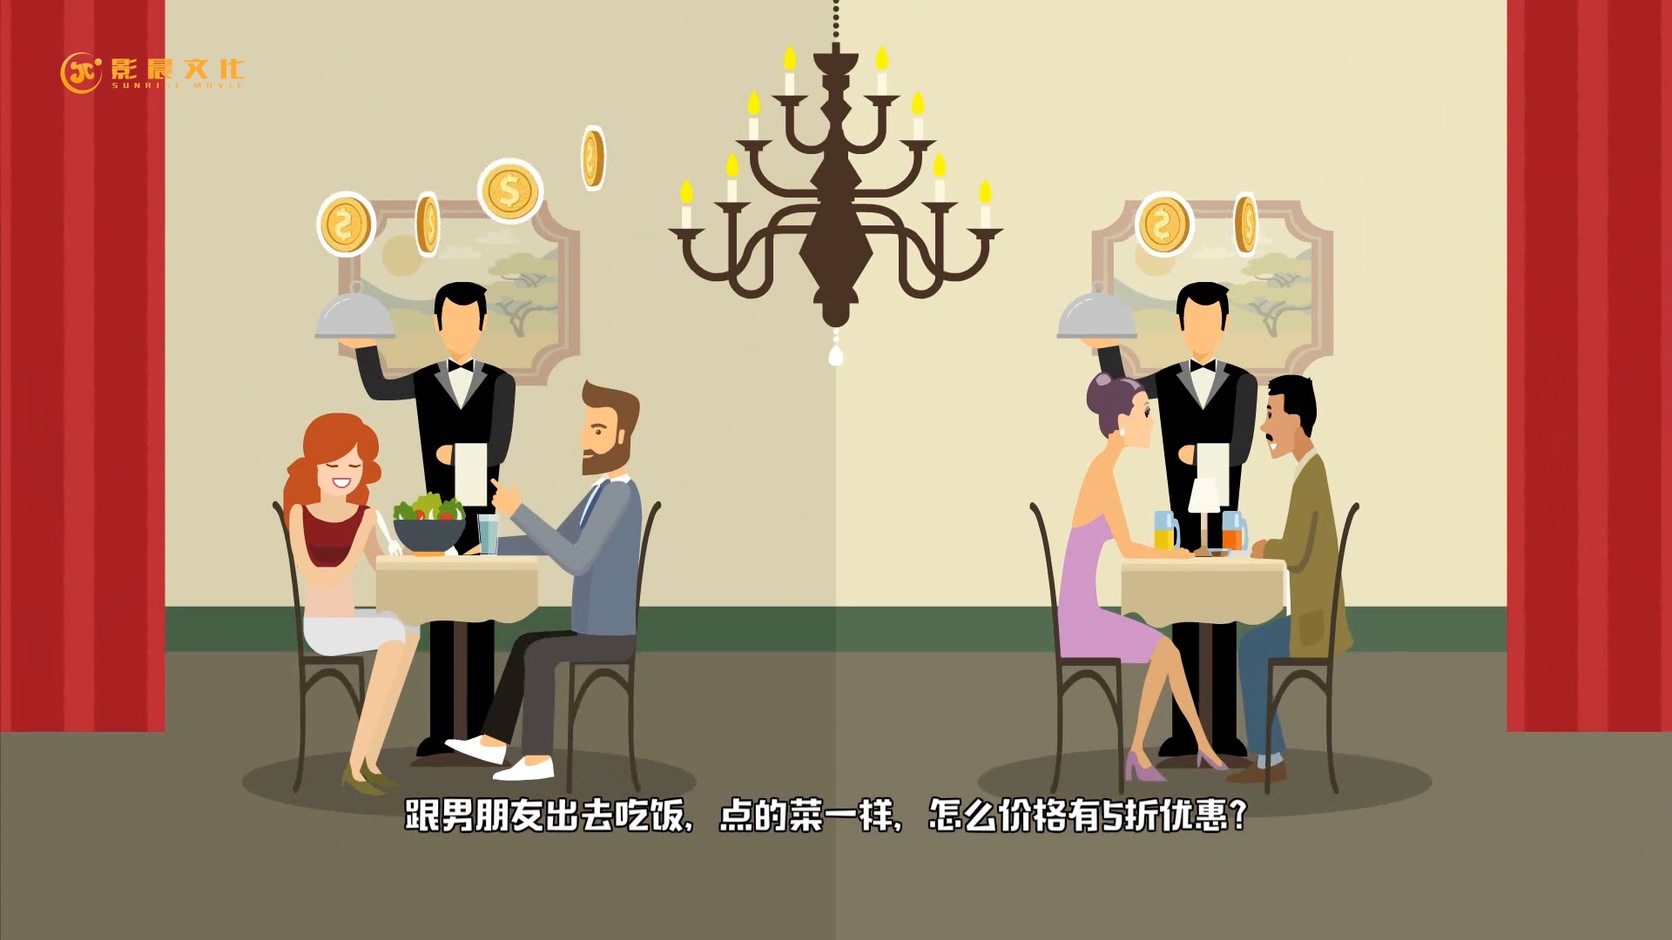 中国银行宣传MG动画